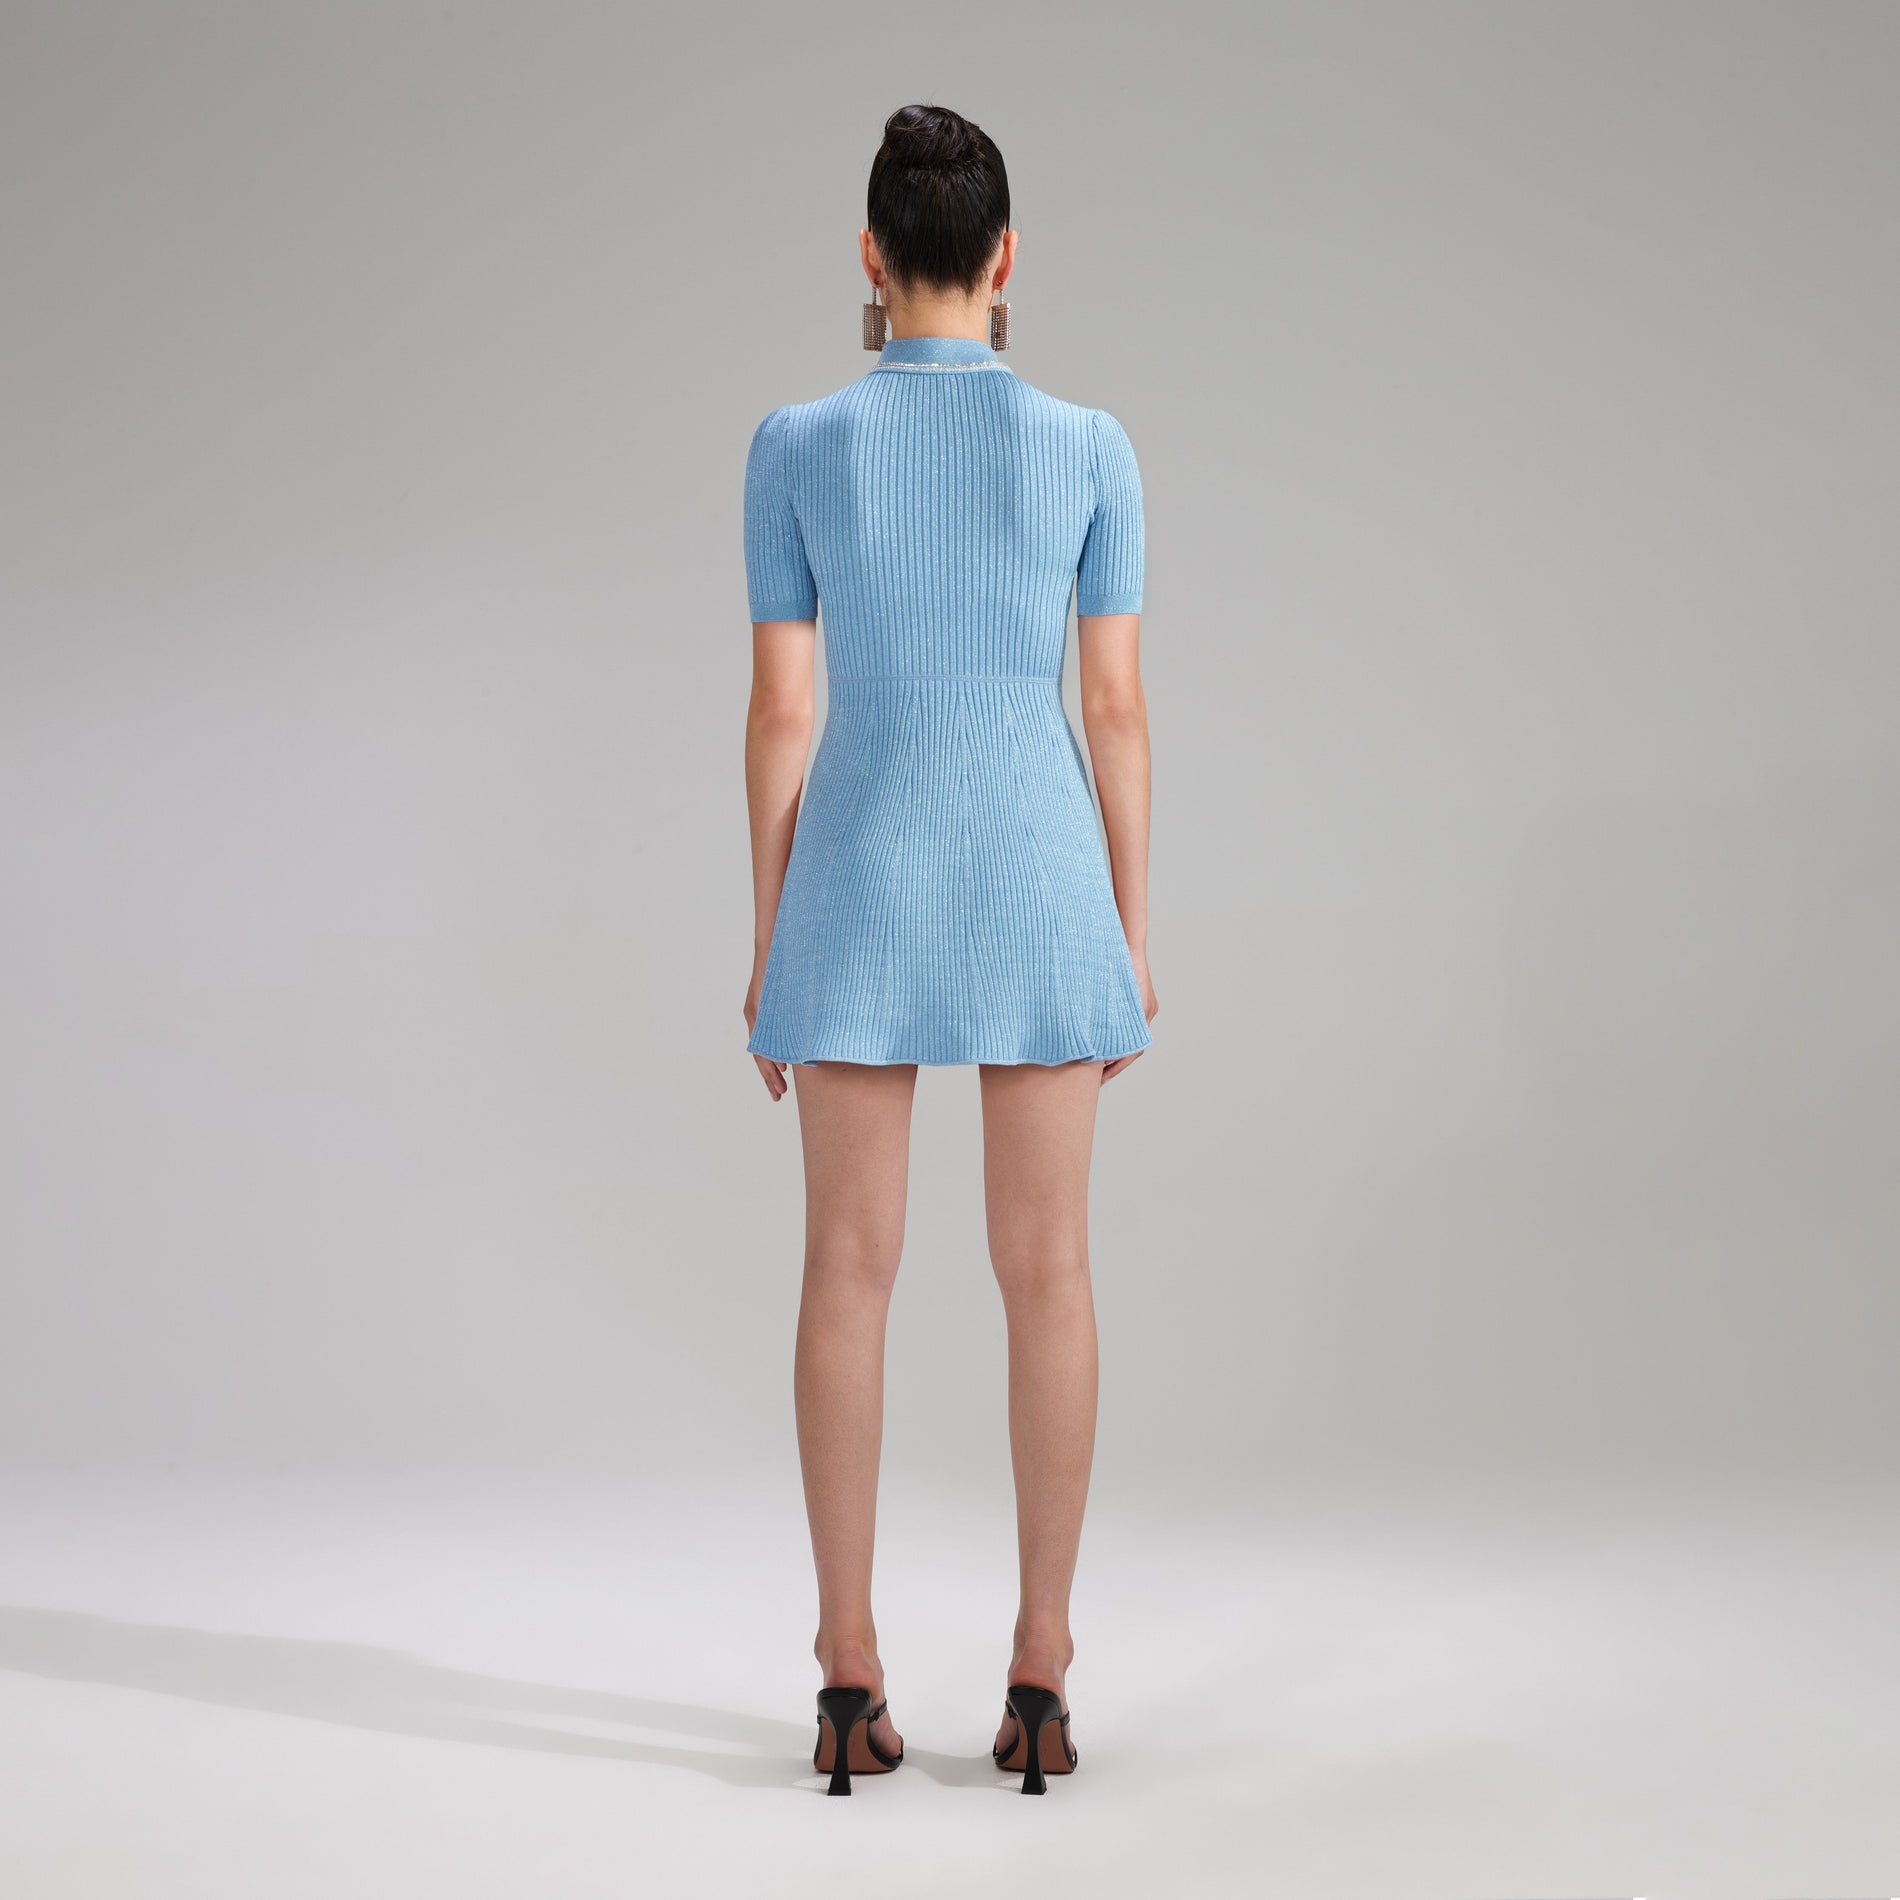 A woman wearing the Blue Lurex Diamante Knit Mini Dress